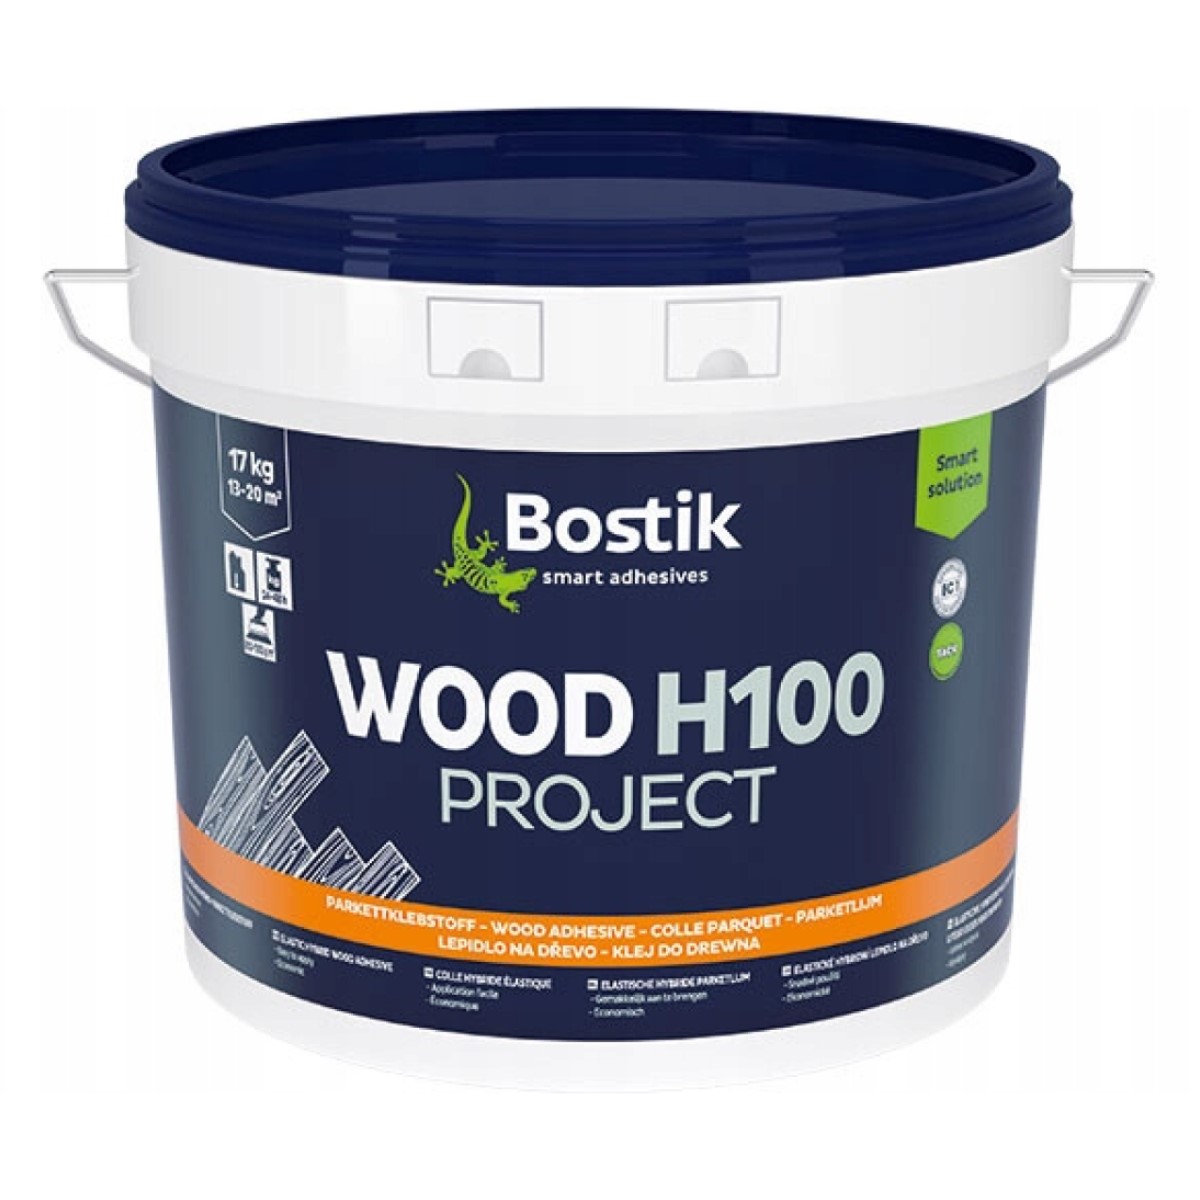 Bostik Wood H100 Project-P MSP līme parketam 14kg